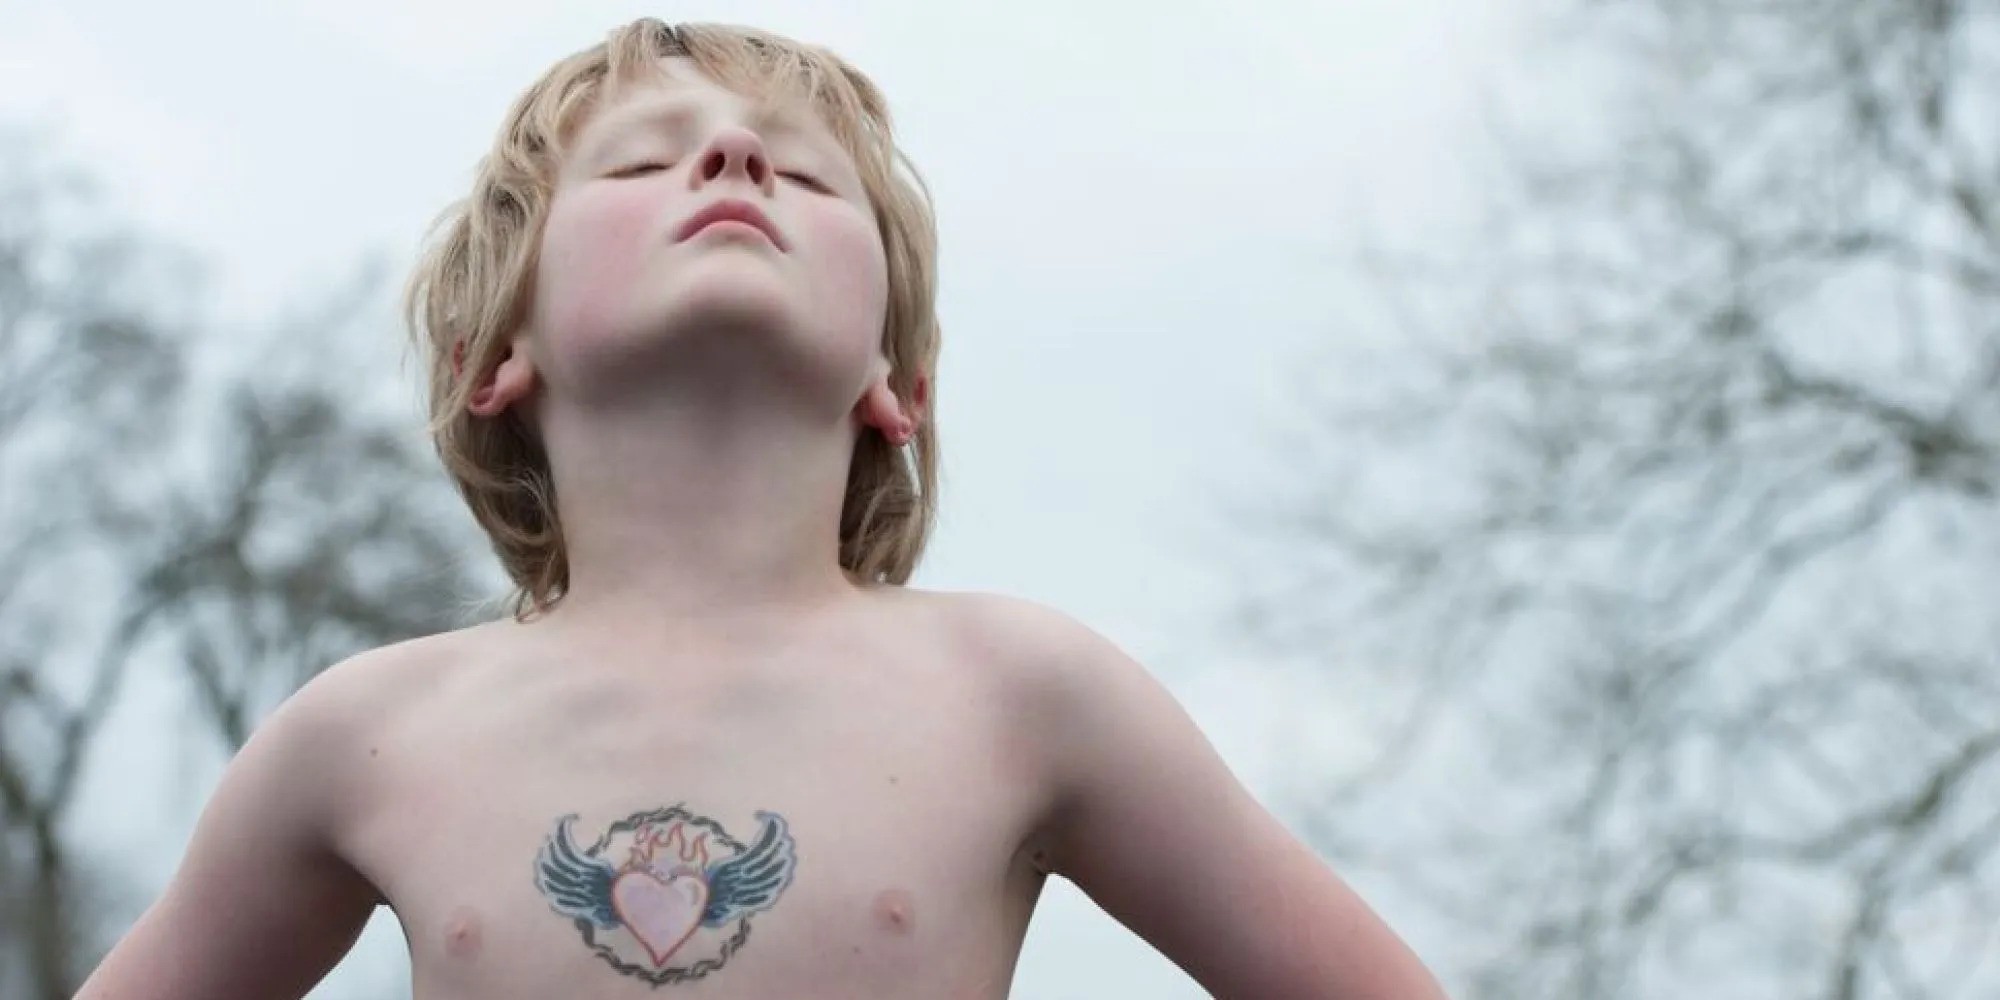 dítě s tetováním srdce s křídly stojící v pozoru